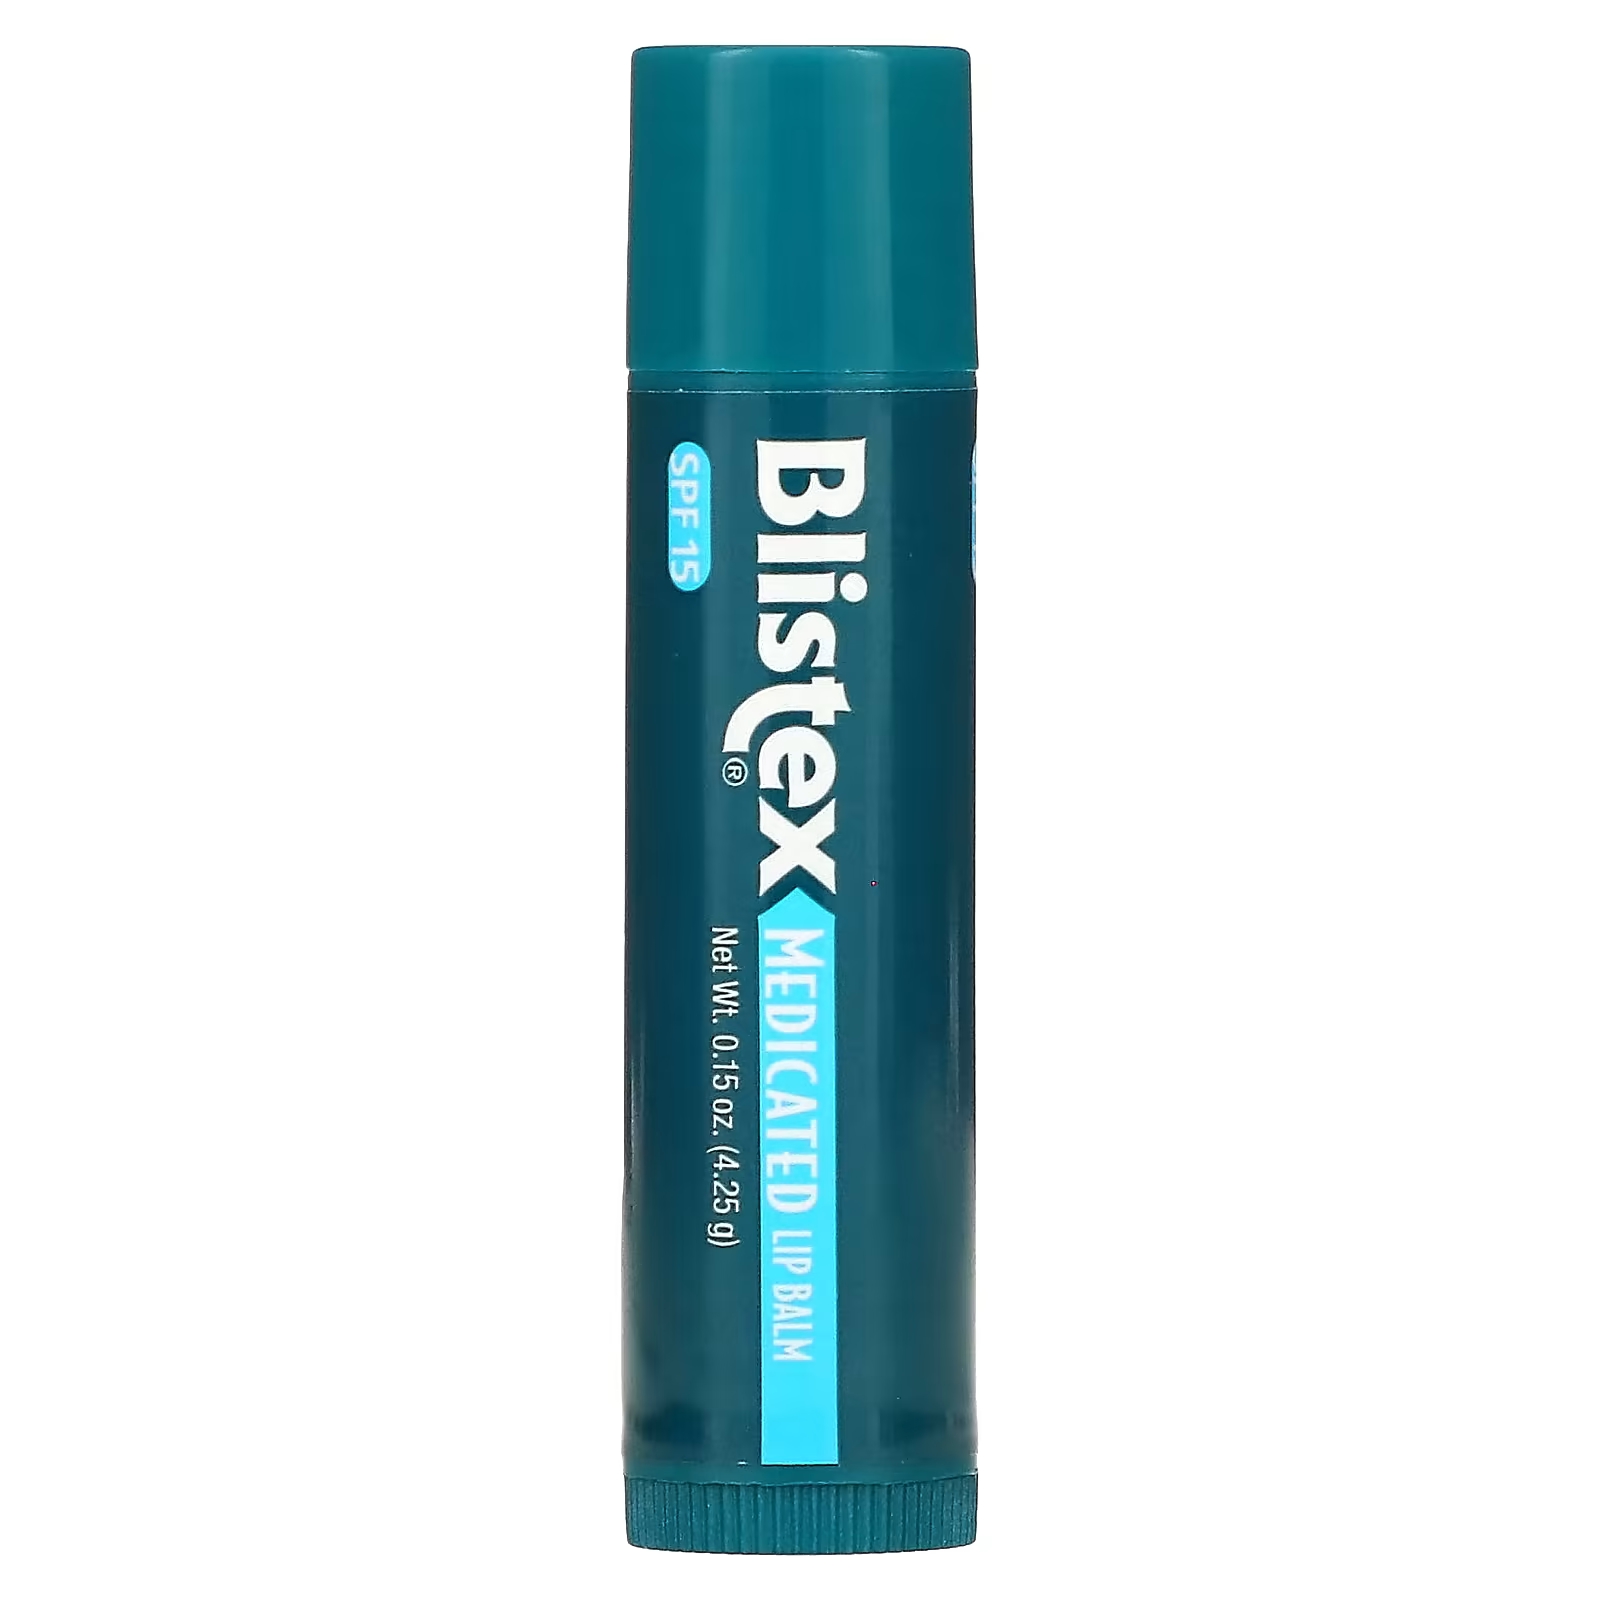 Blistex Лекарственное средство для защиты губ/солнцезащитный крем SPF 15, 0,15 унции (4,25 г) blistex лекарственное средство для защиты губ солнцезащитное средство spf 15 berry 0 15 унции 4 25 г